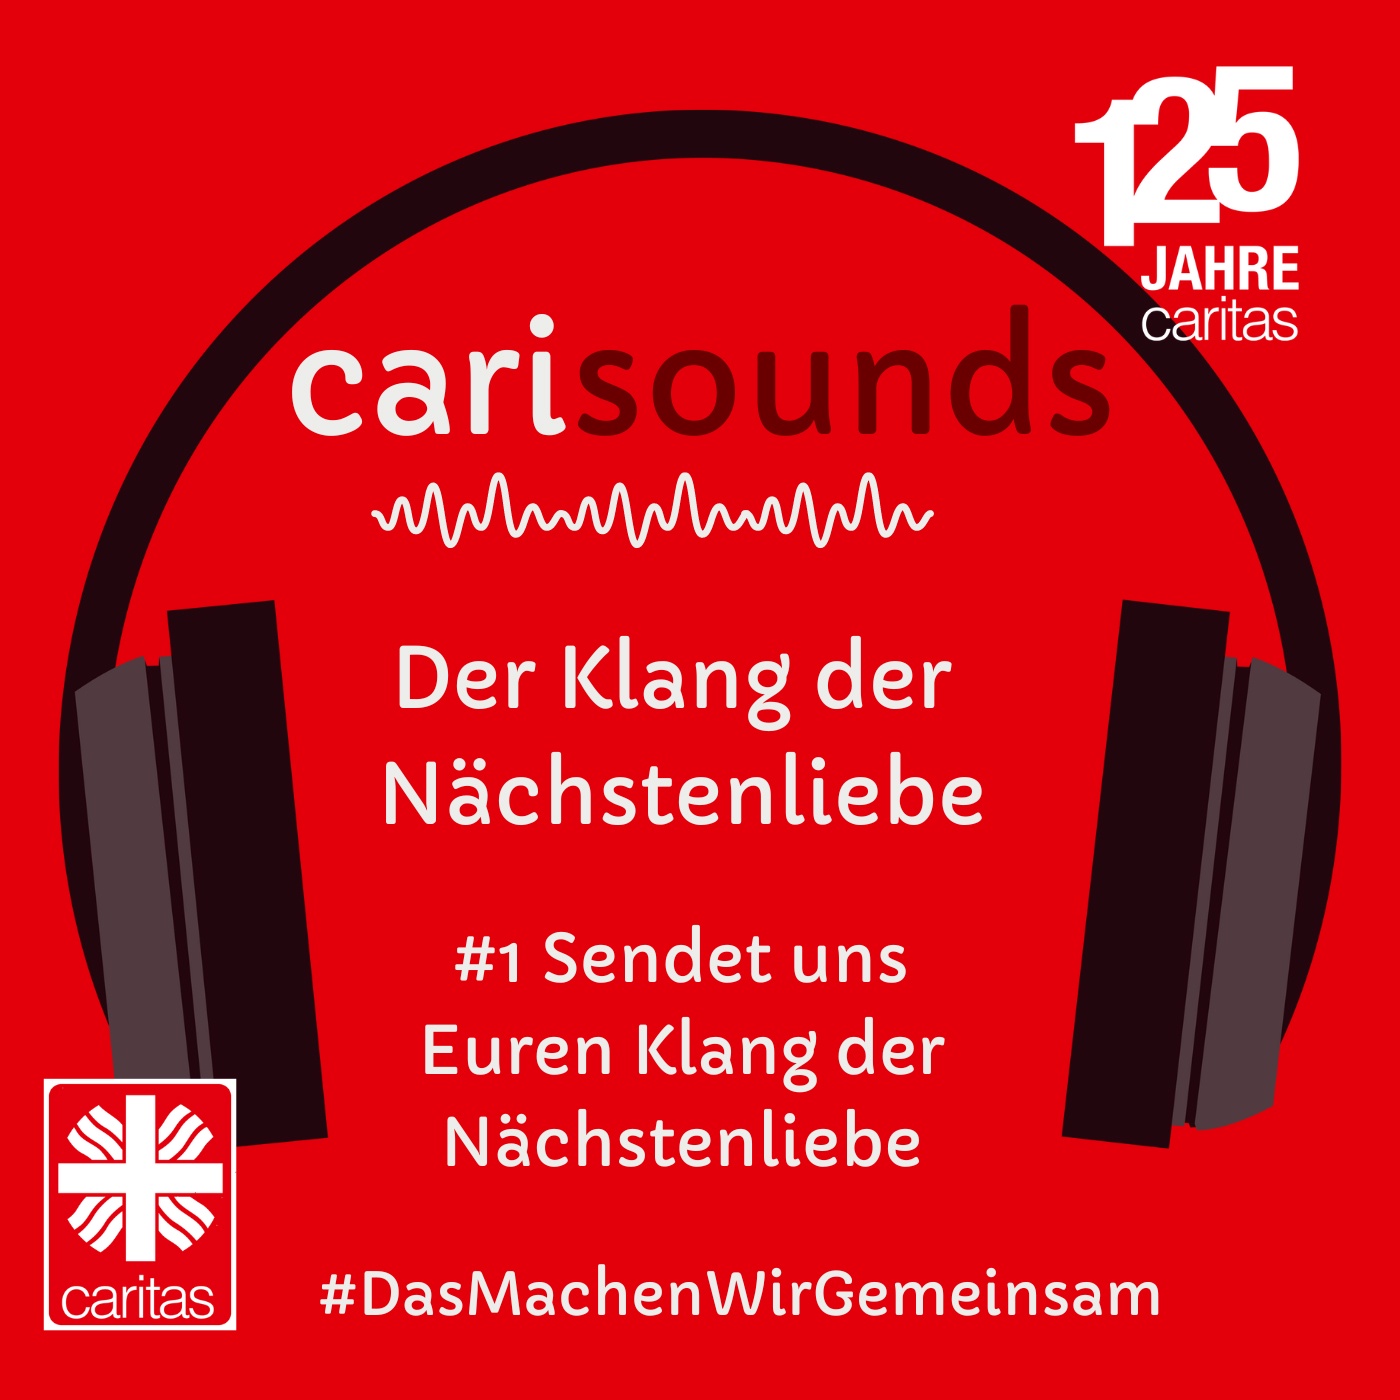 #1 carisounds - Sendet uns Euren Klang der Nächstenliebe